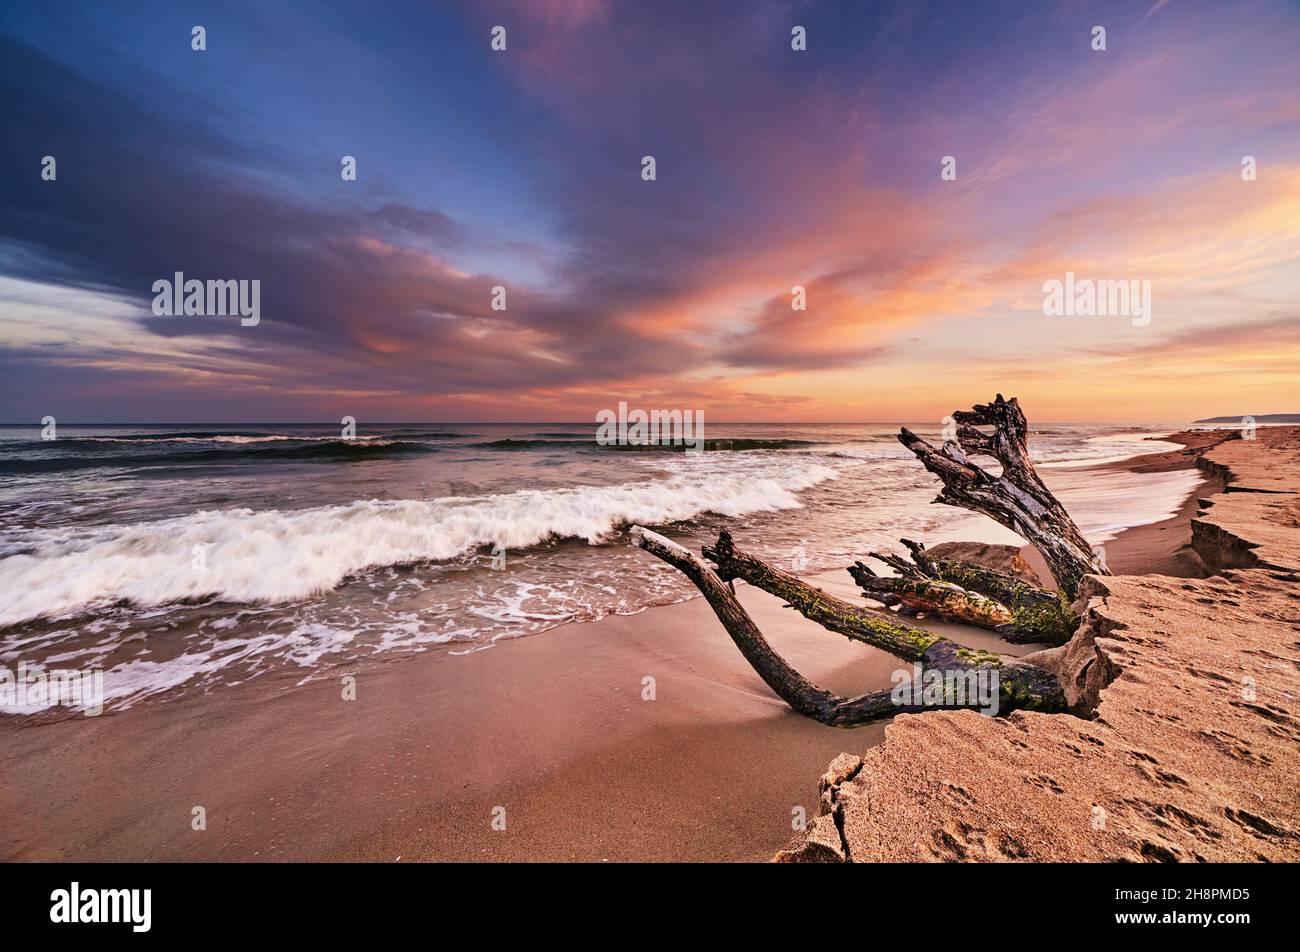 Coucher de soleil coloré sur la mer Noire, plage de Kamchia, Bulgarie Banque D'Images